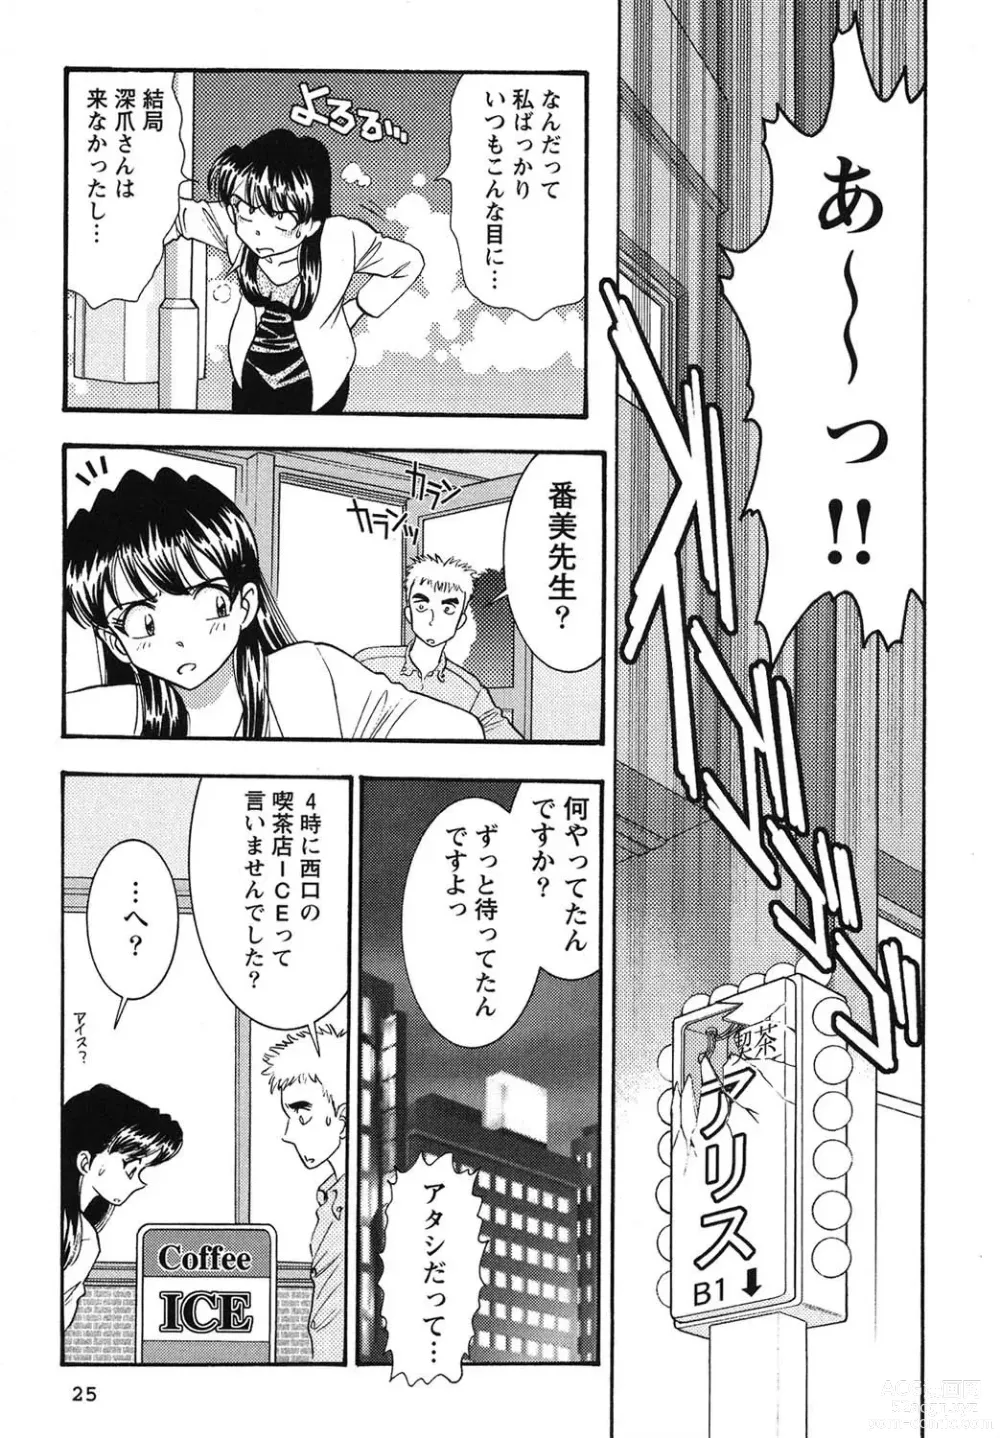 Page 26 of manga Bambina Oiroke  Battle  Hen